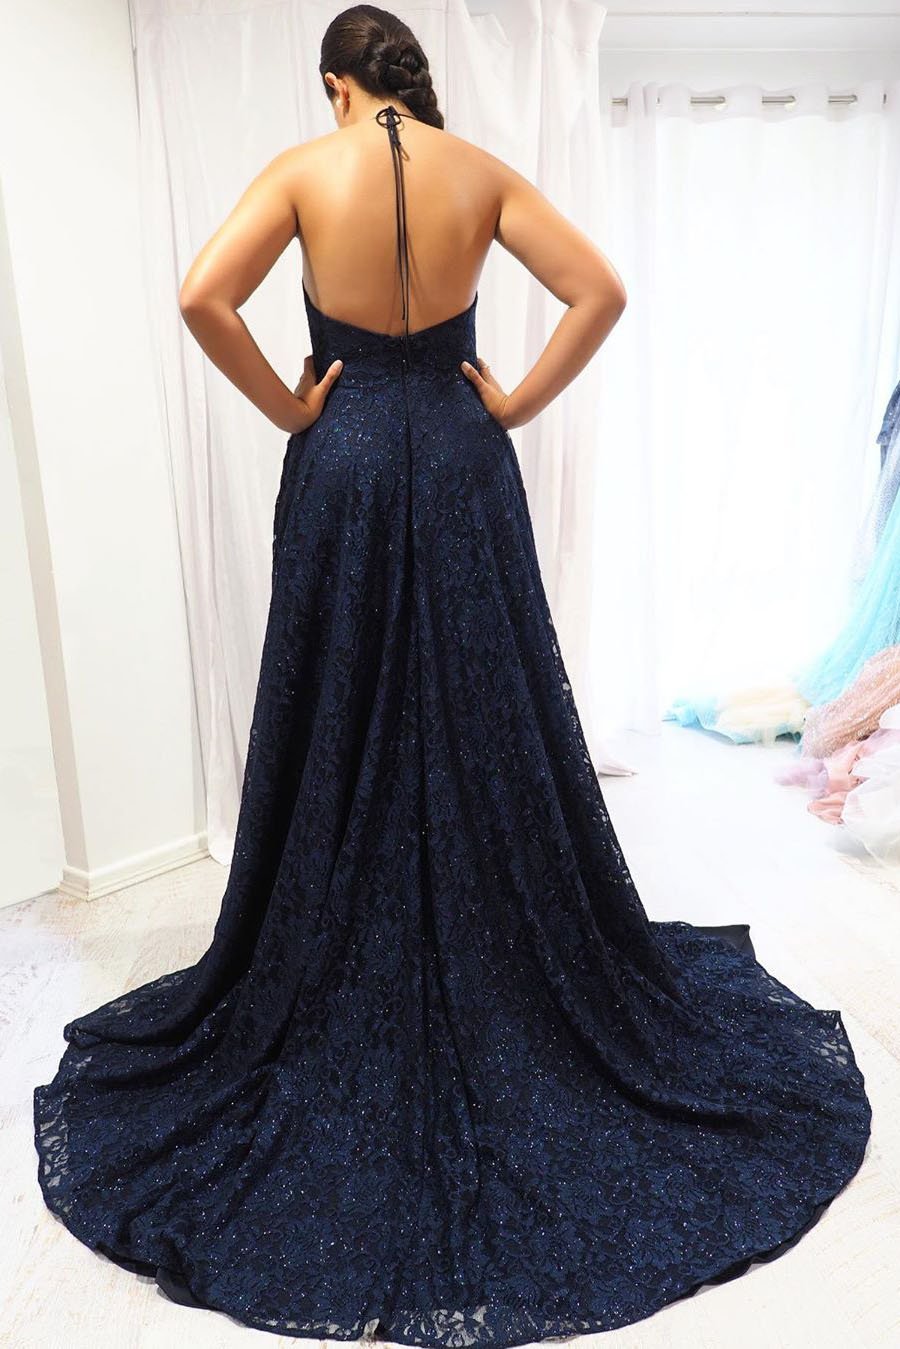 Elegant Navy Blue A-Line Halter Long Backless Lace Evening Dresses with Slit Prom Dresses